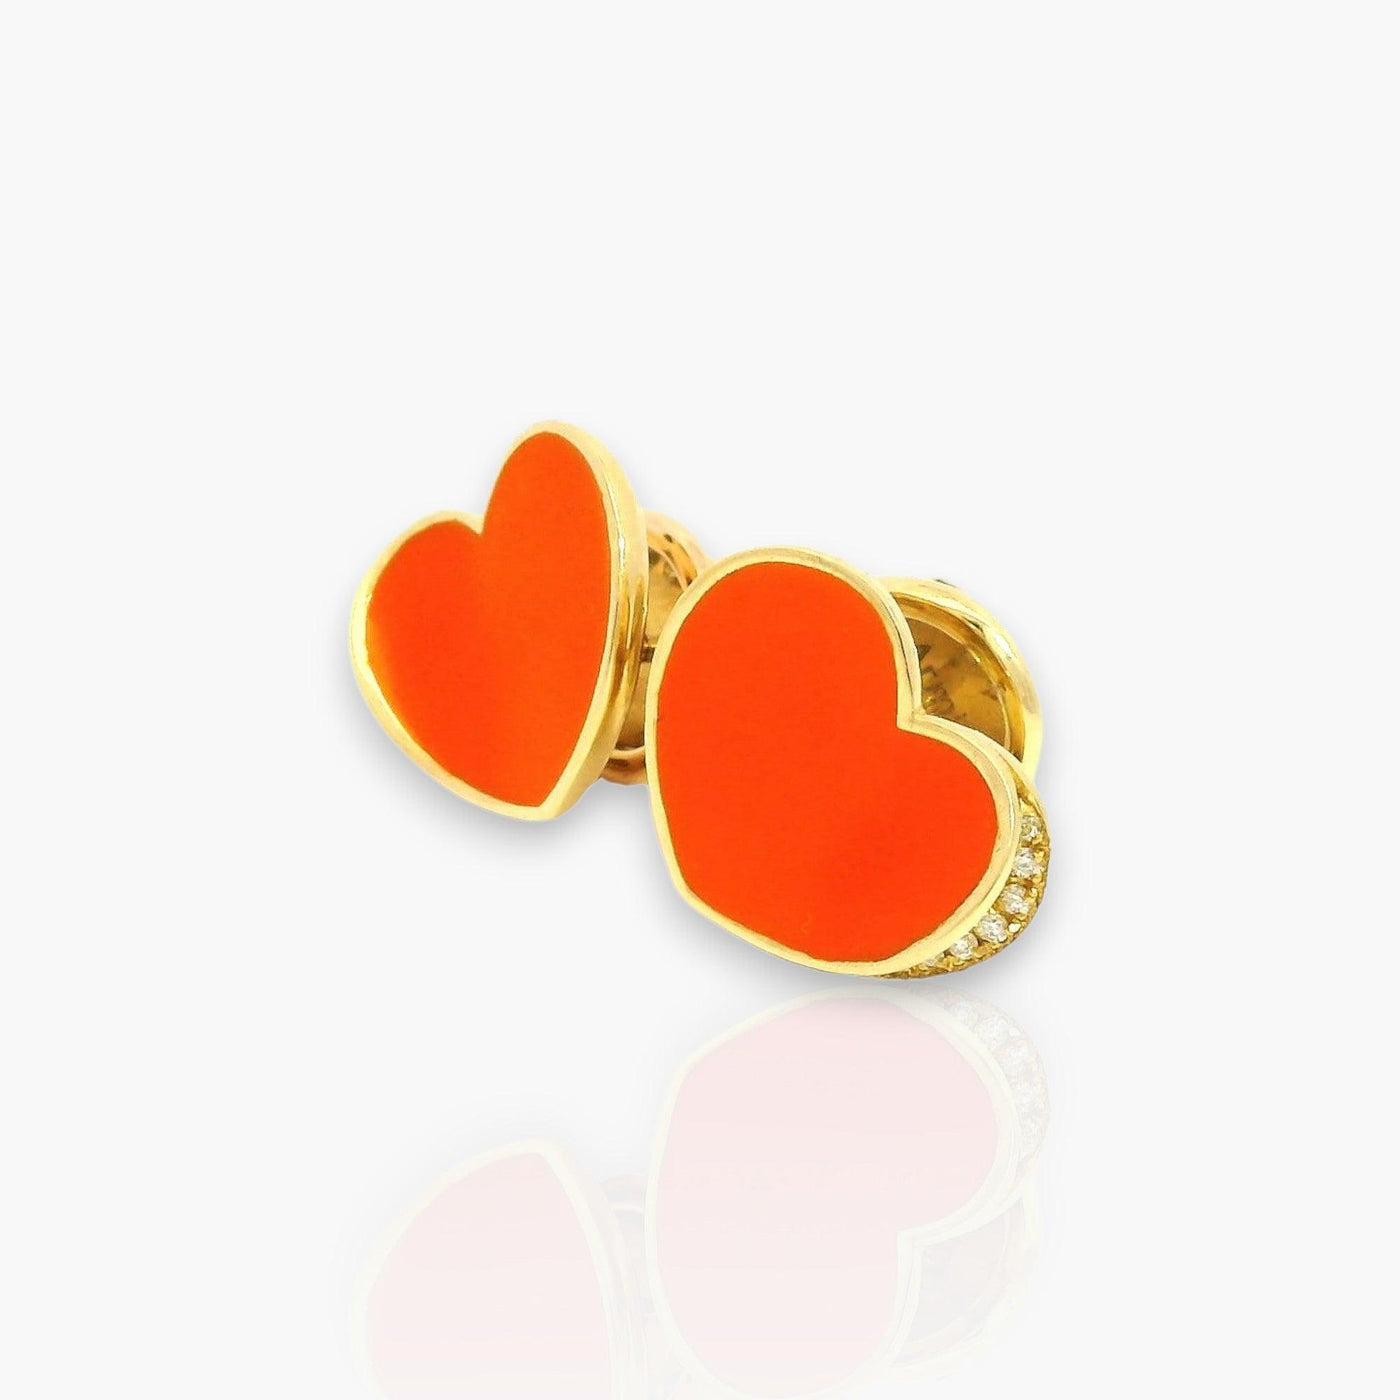 18k gold earrings with orange heart & diamonds - Moregola Fine Jewelry